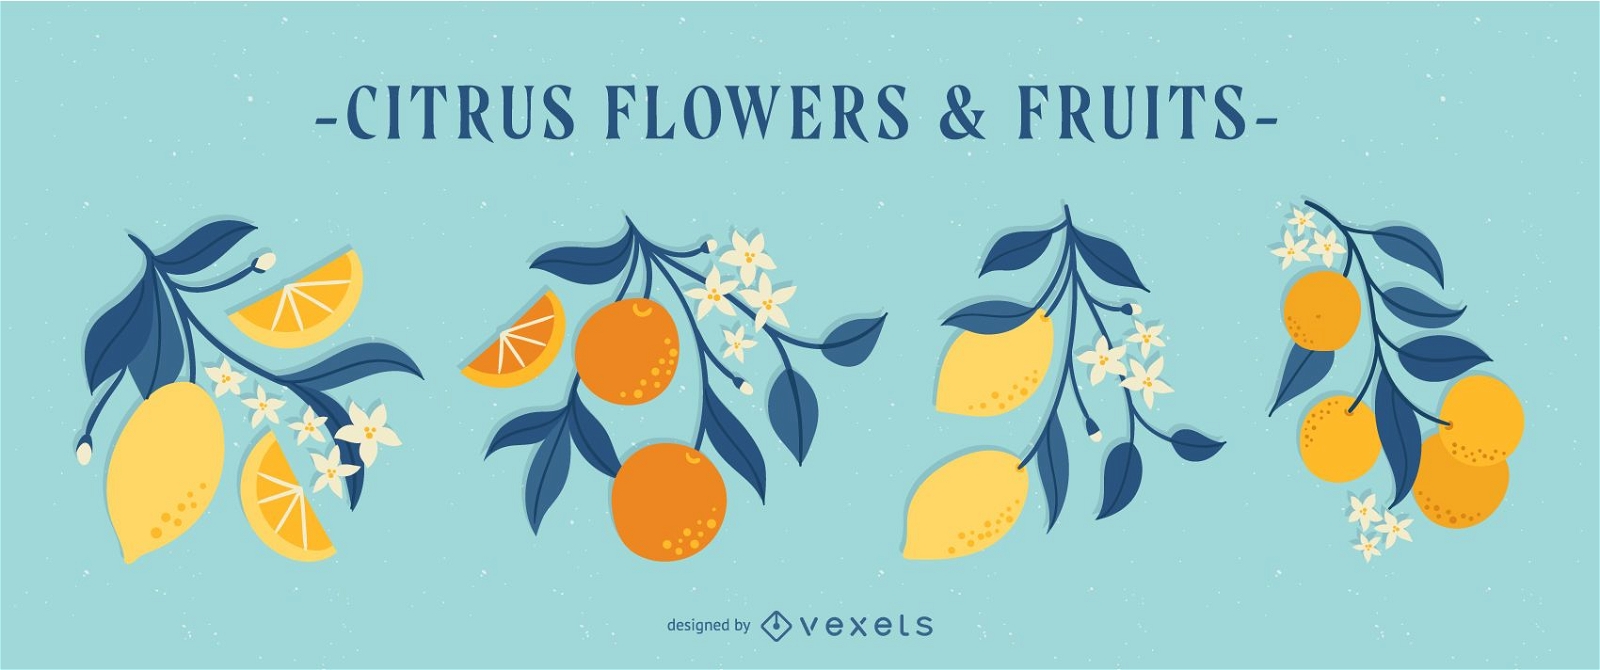 Frühlings-Zitrusblumen- und -frucht-Illustrationssatz